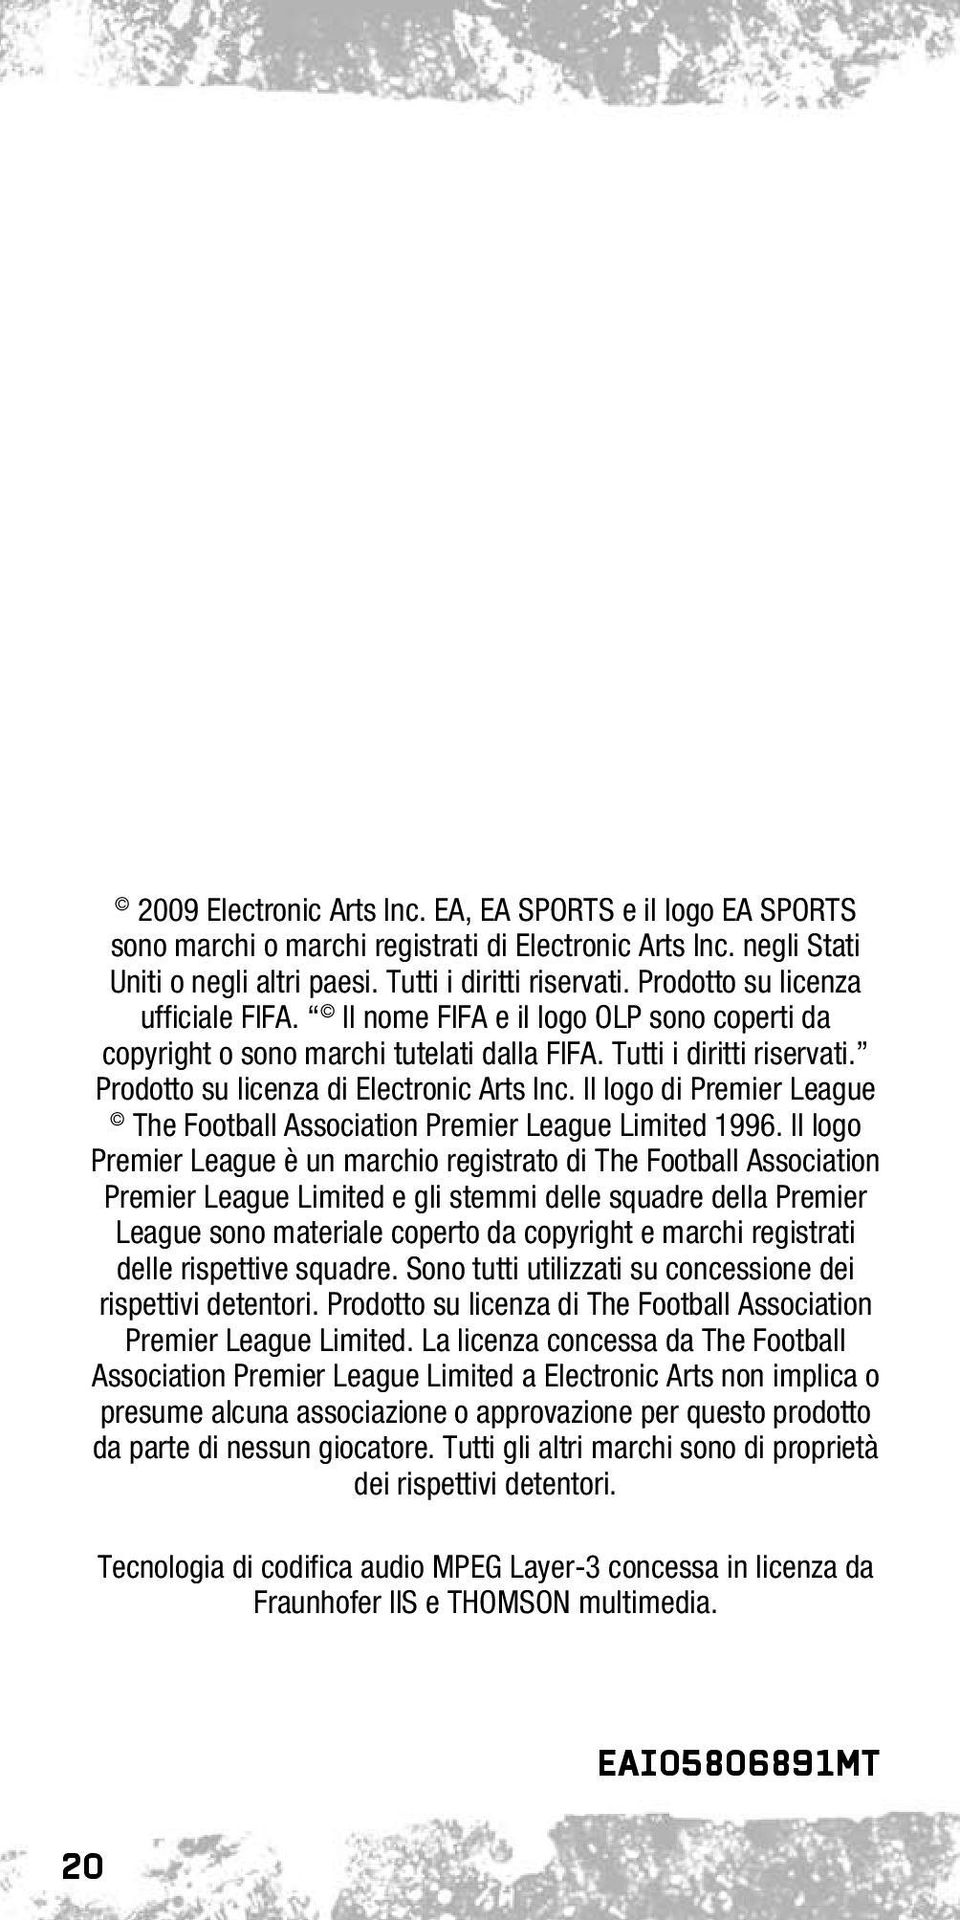 Il logo di Premier League The Football Association Premier League Limited 1996.